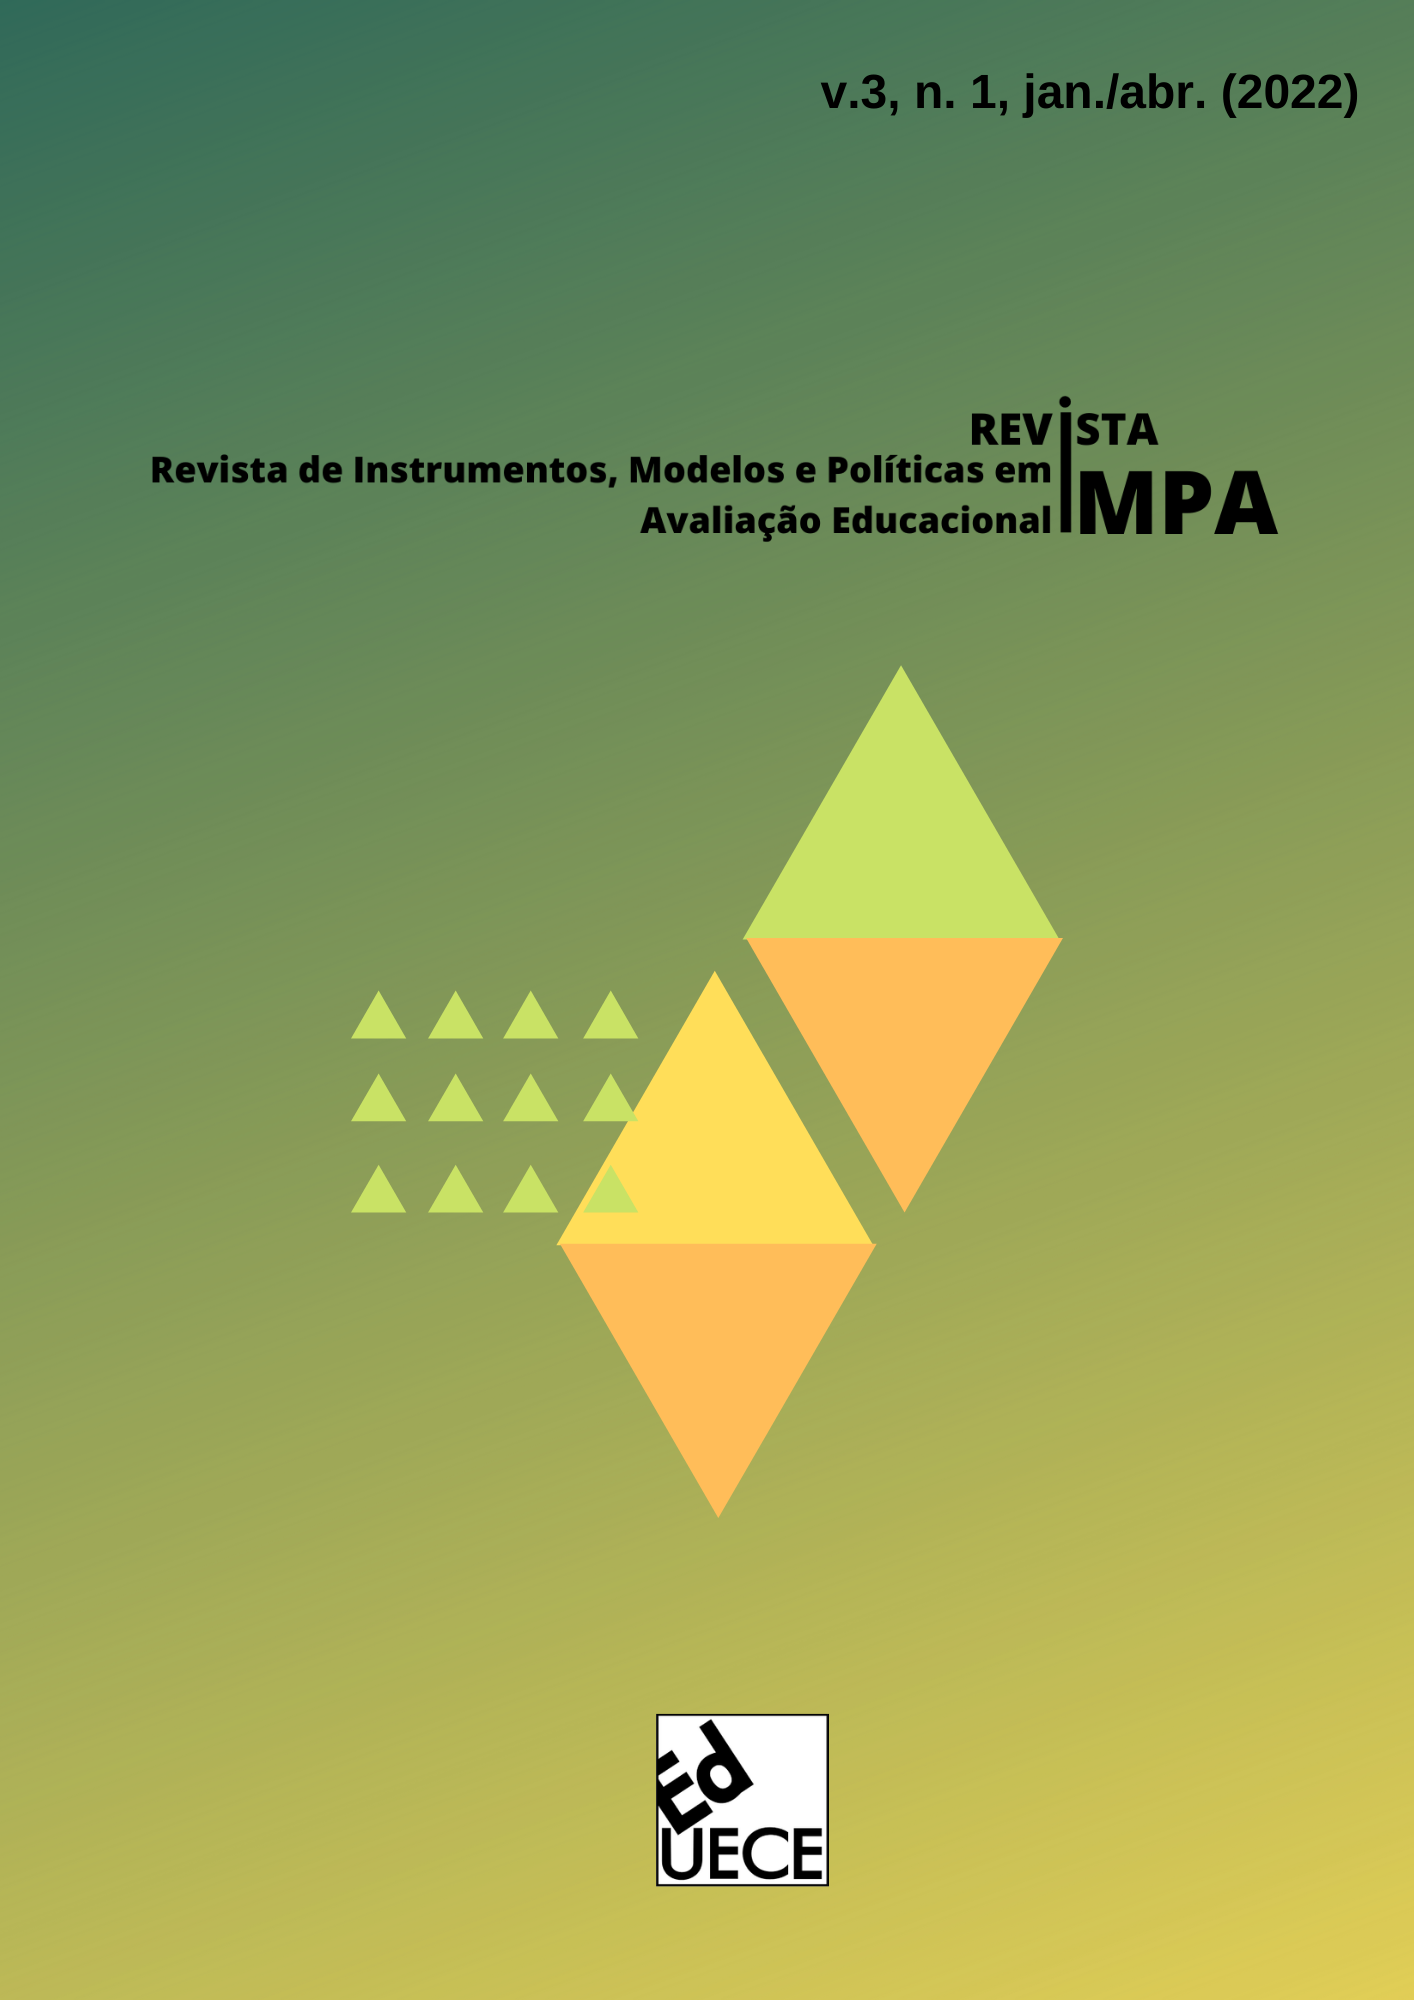 					Visualizar v. 3 n. 1 (2022): Revista de Instrumentos, Modelos e Políticas em Avaliação Educacional
				